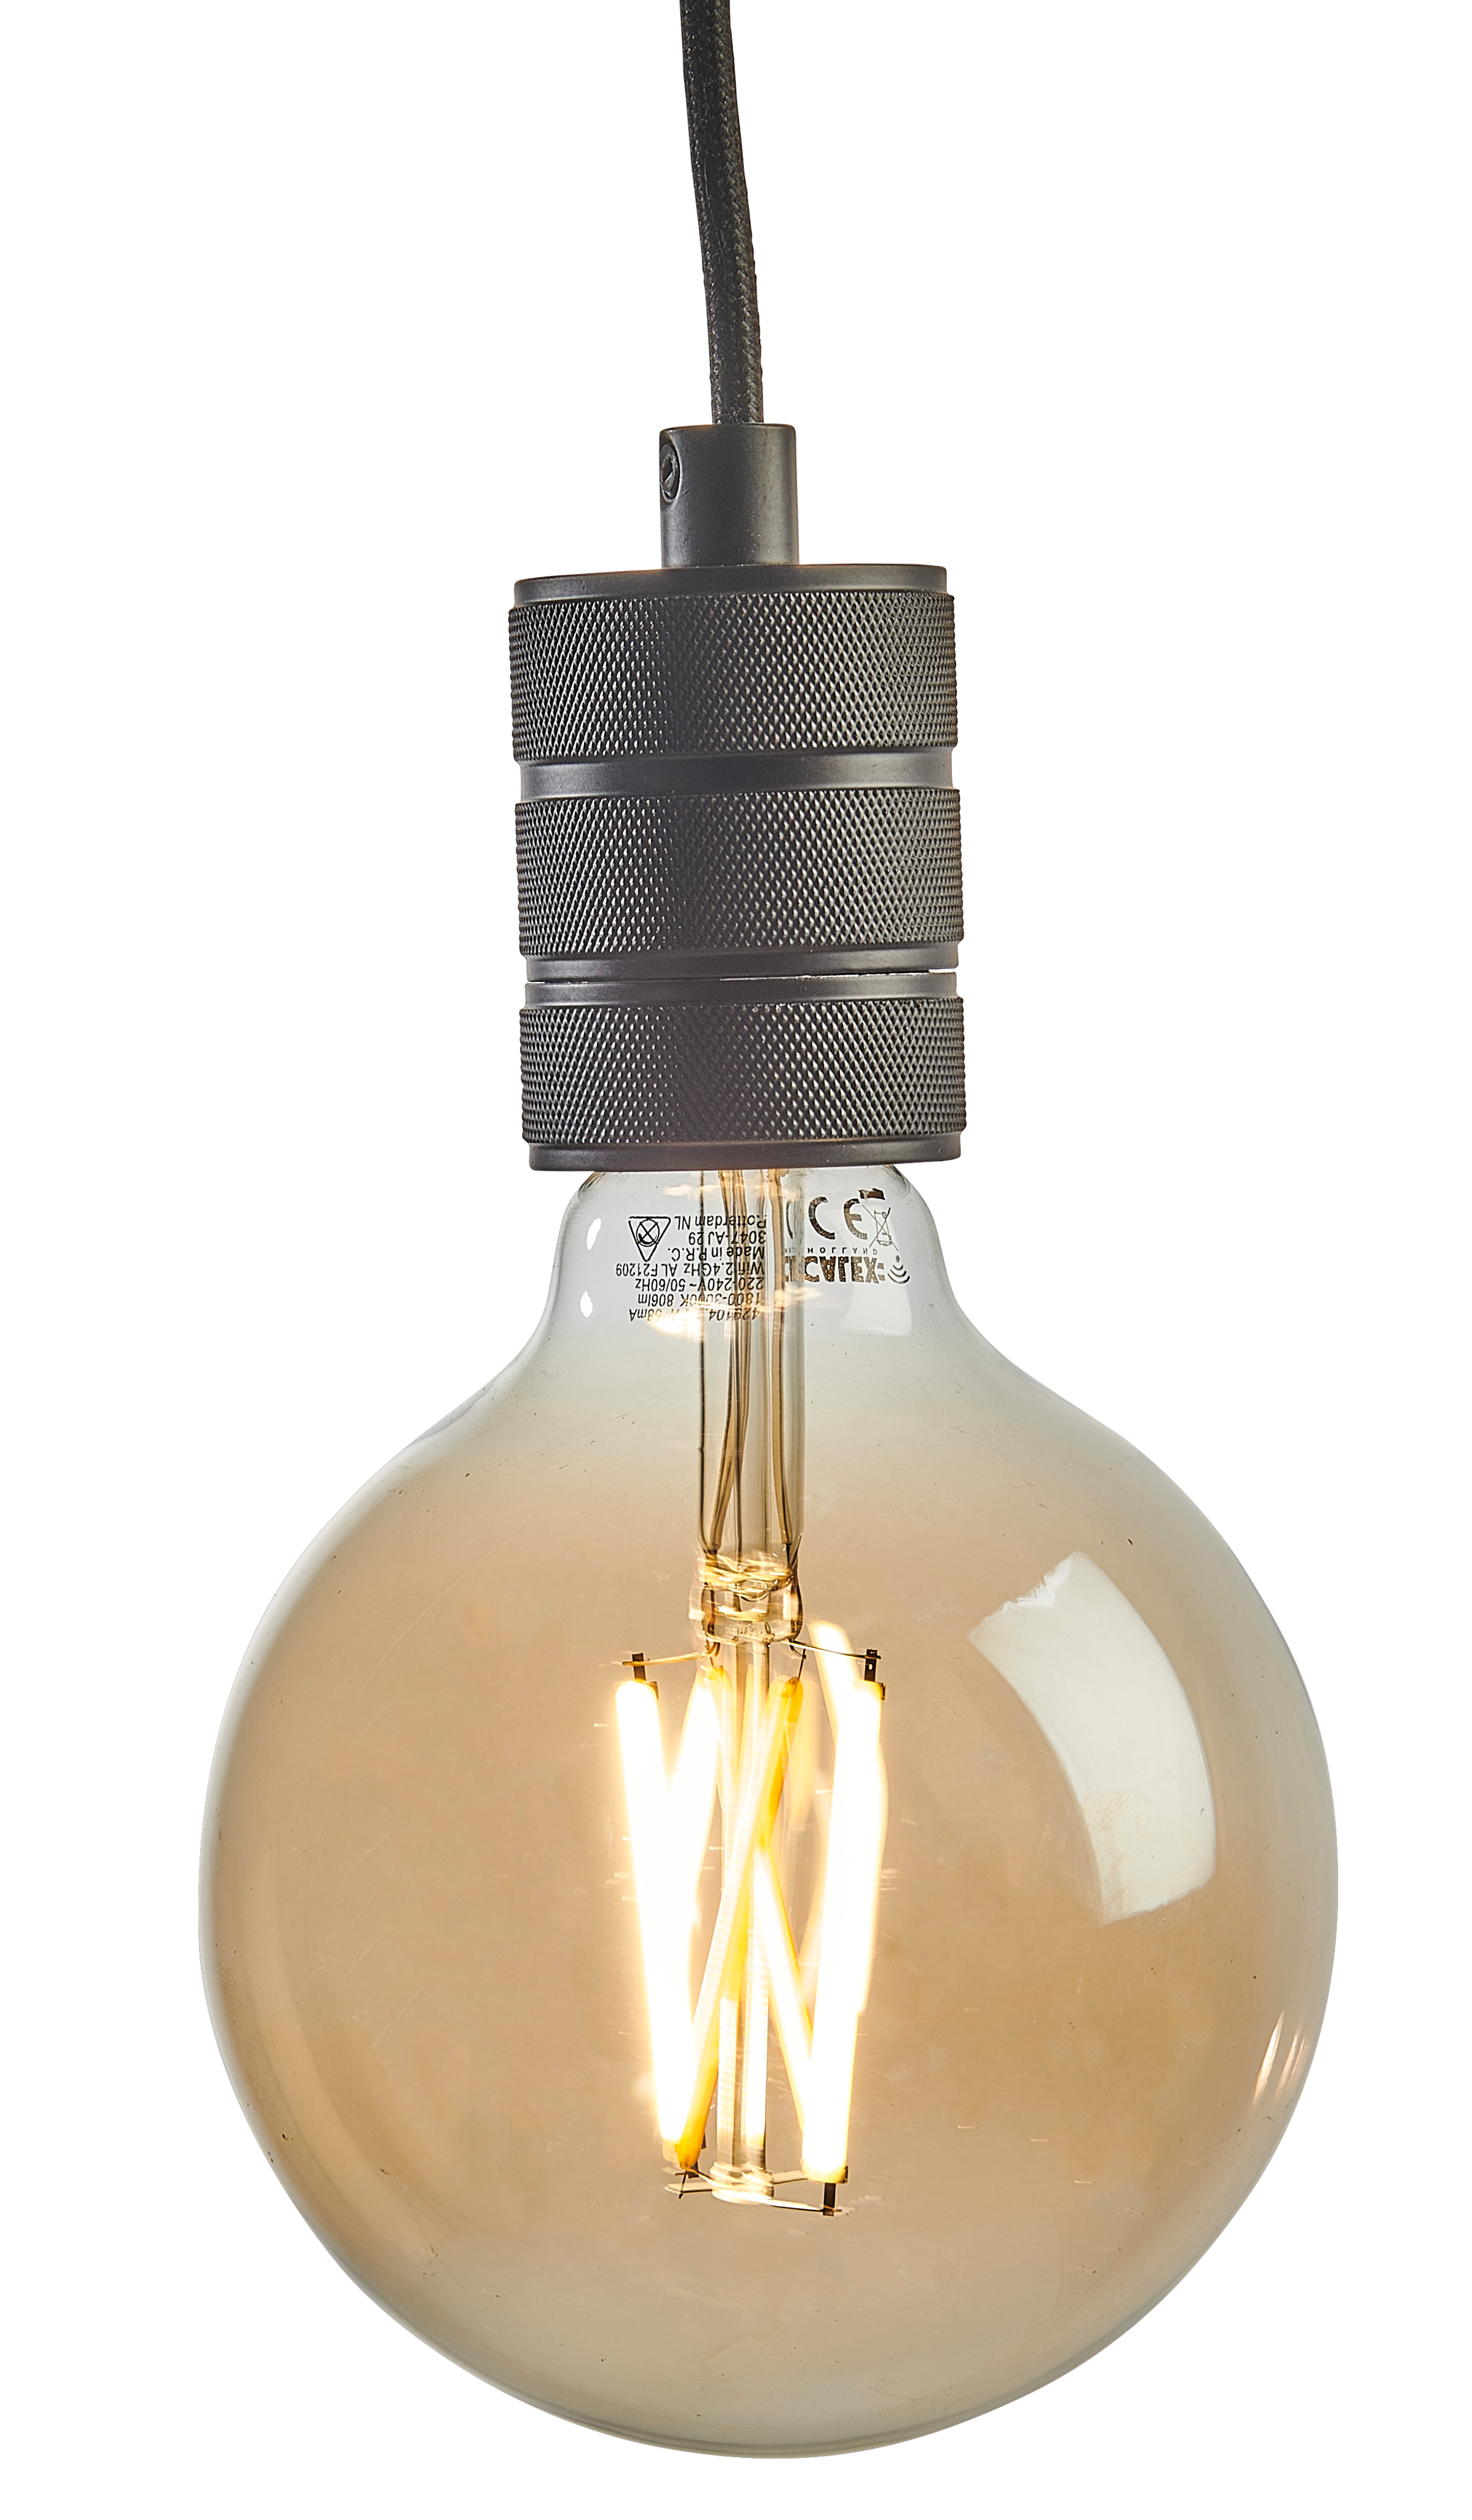 Set de 3 bombillas LED regulables smart E27 A60 7W 806 lm 1800-3000K